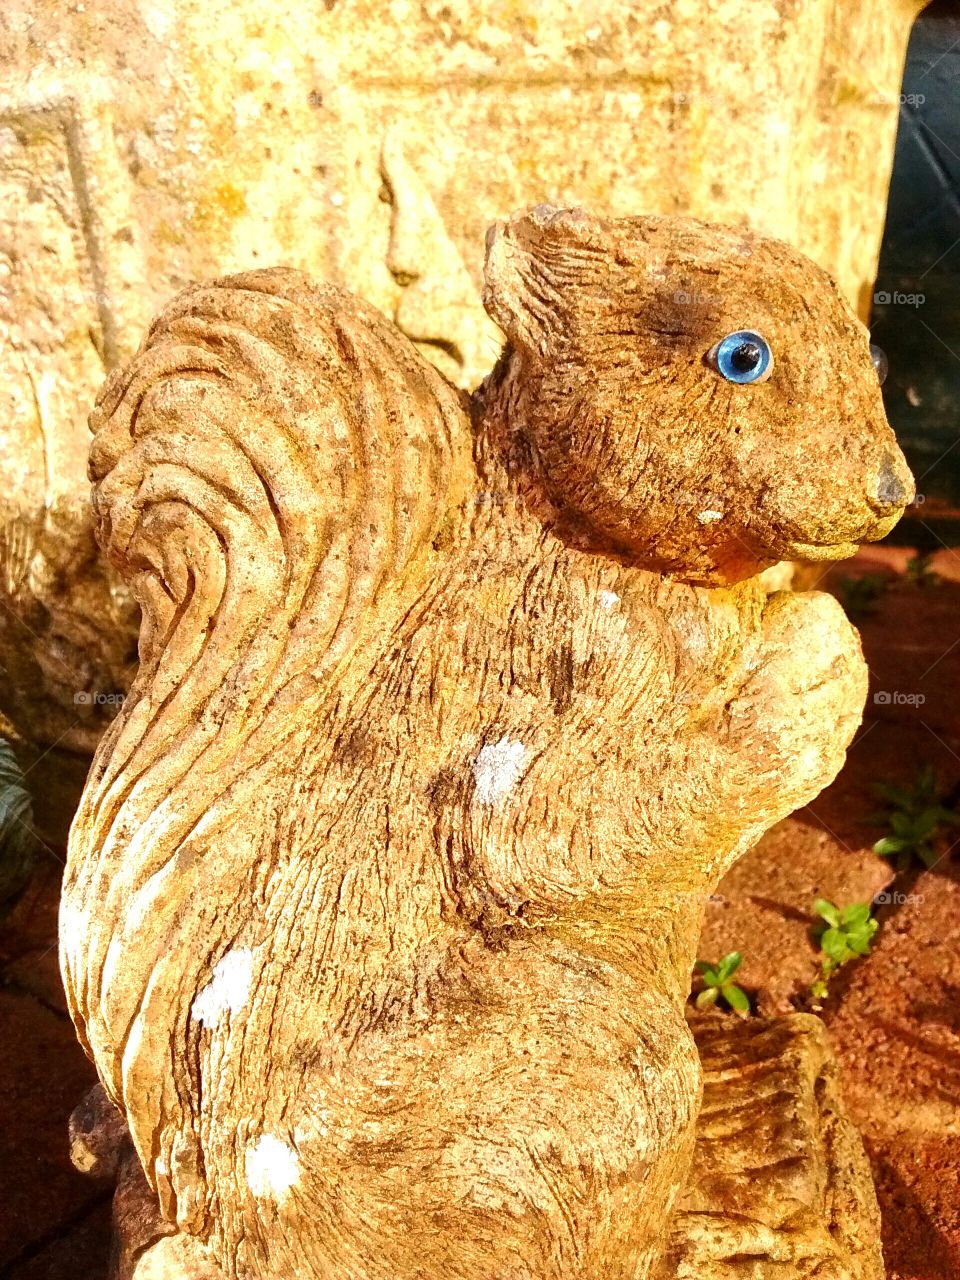 Squirrel statue